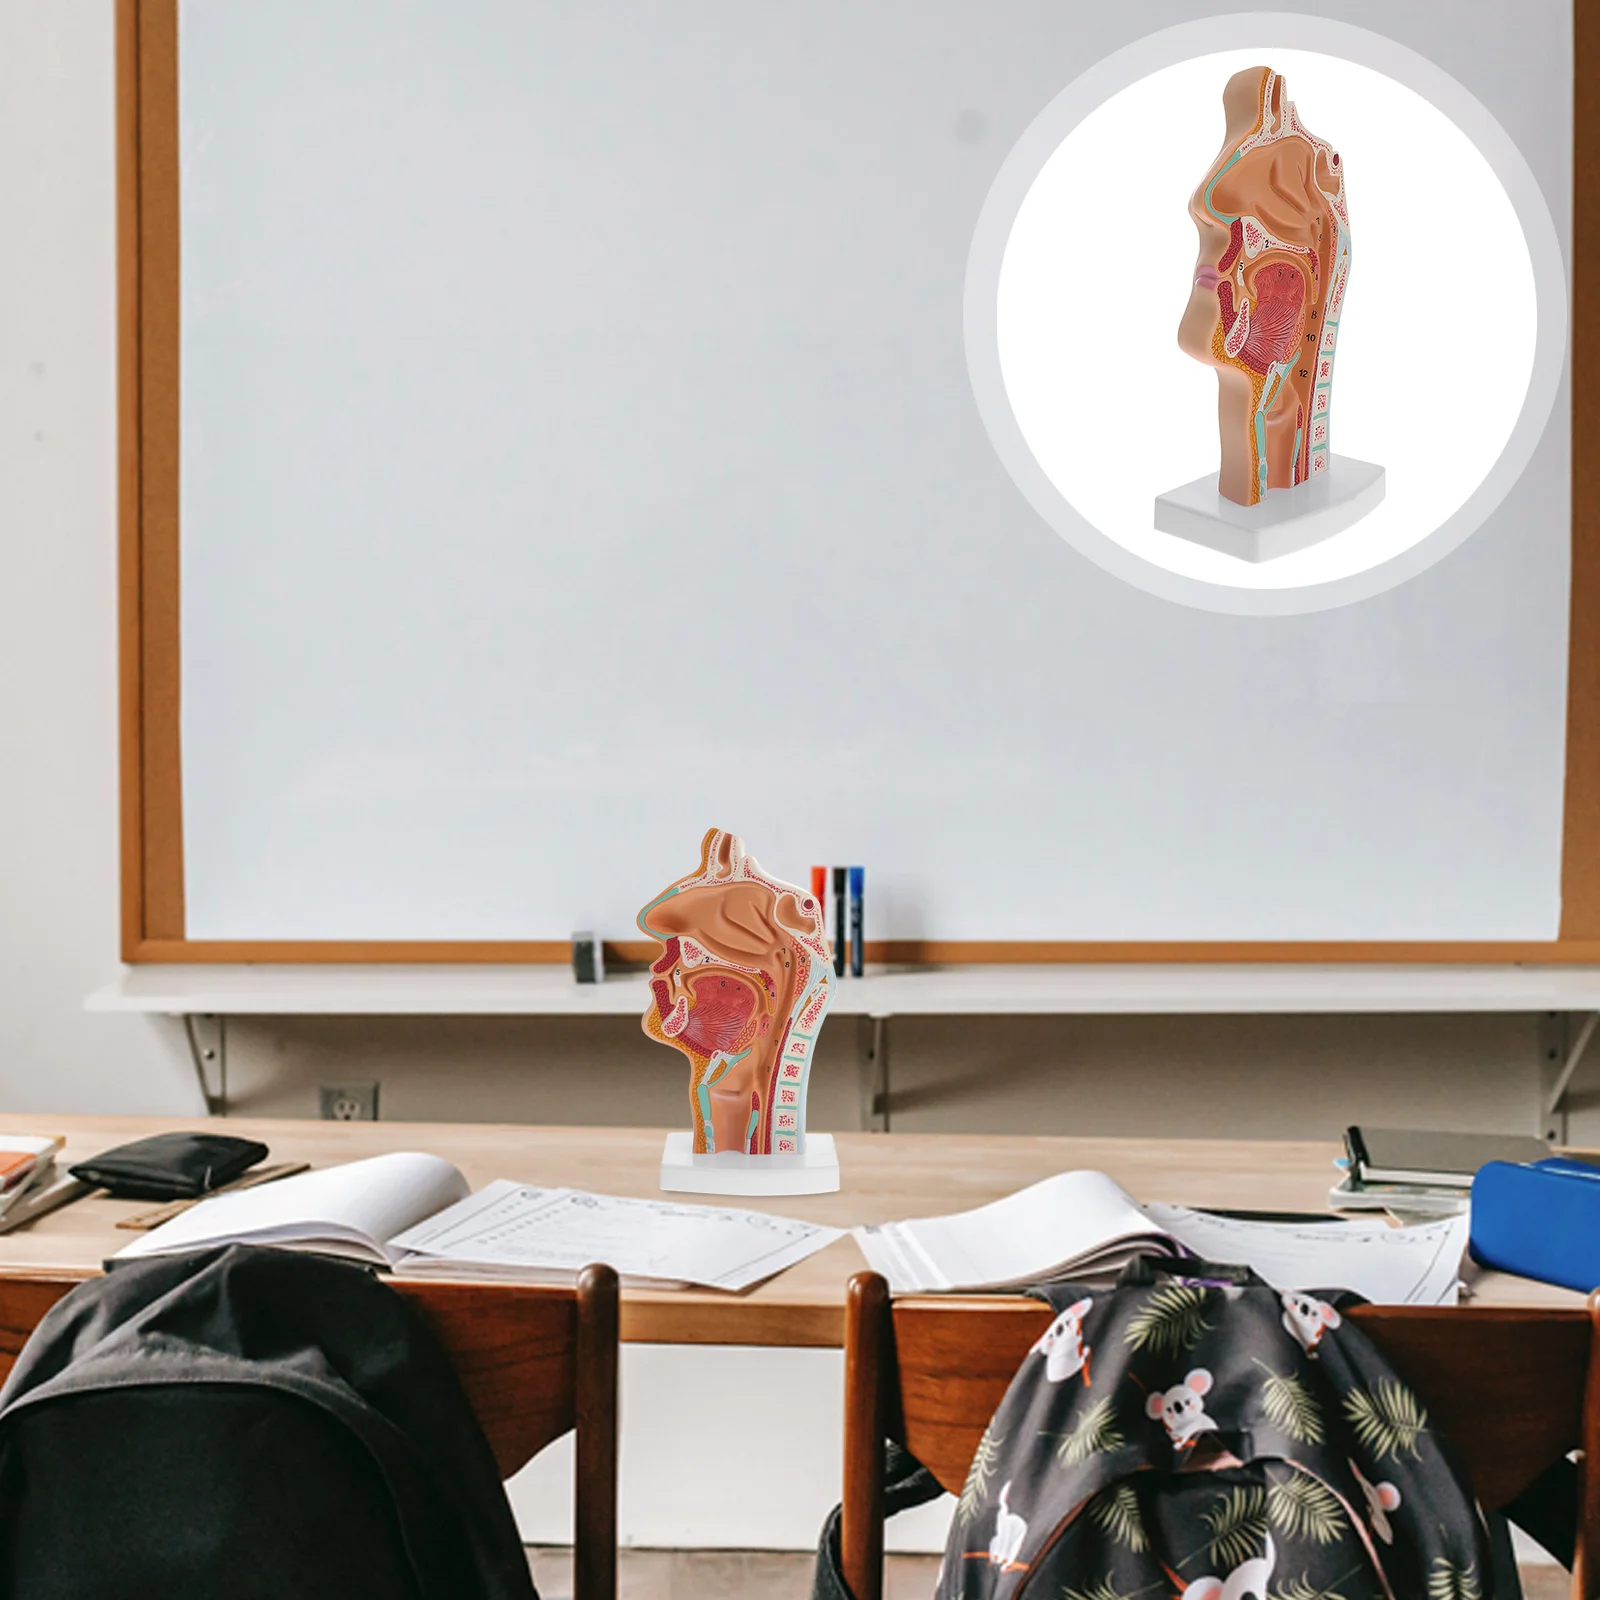 

Человеческая носовая полость ротовой полости Highstrung врачи офисные украшения моделирование ларинкса и лекарства инструмент для школы обучающий ПВХ анатомический